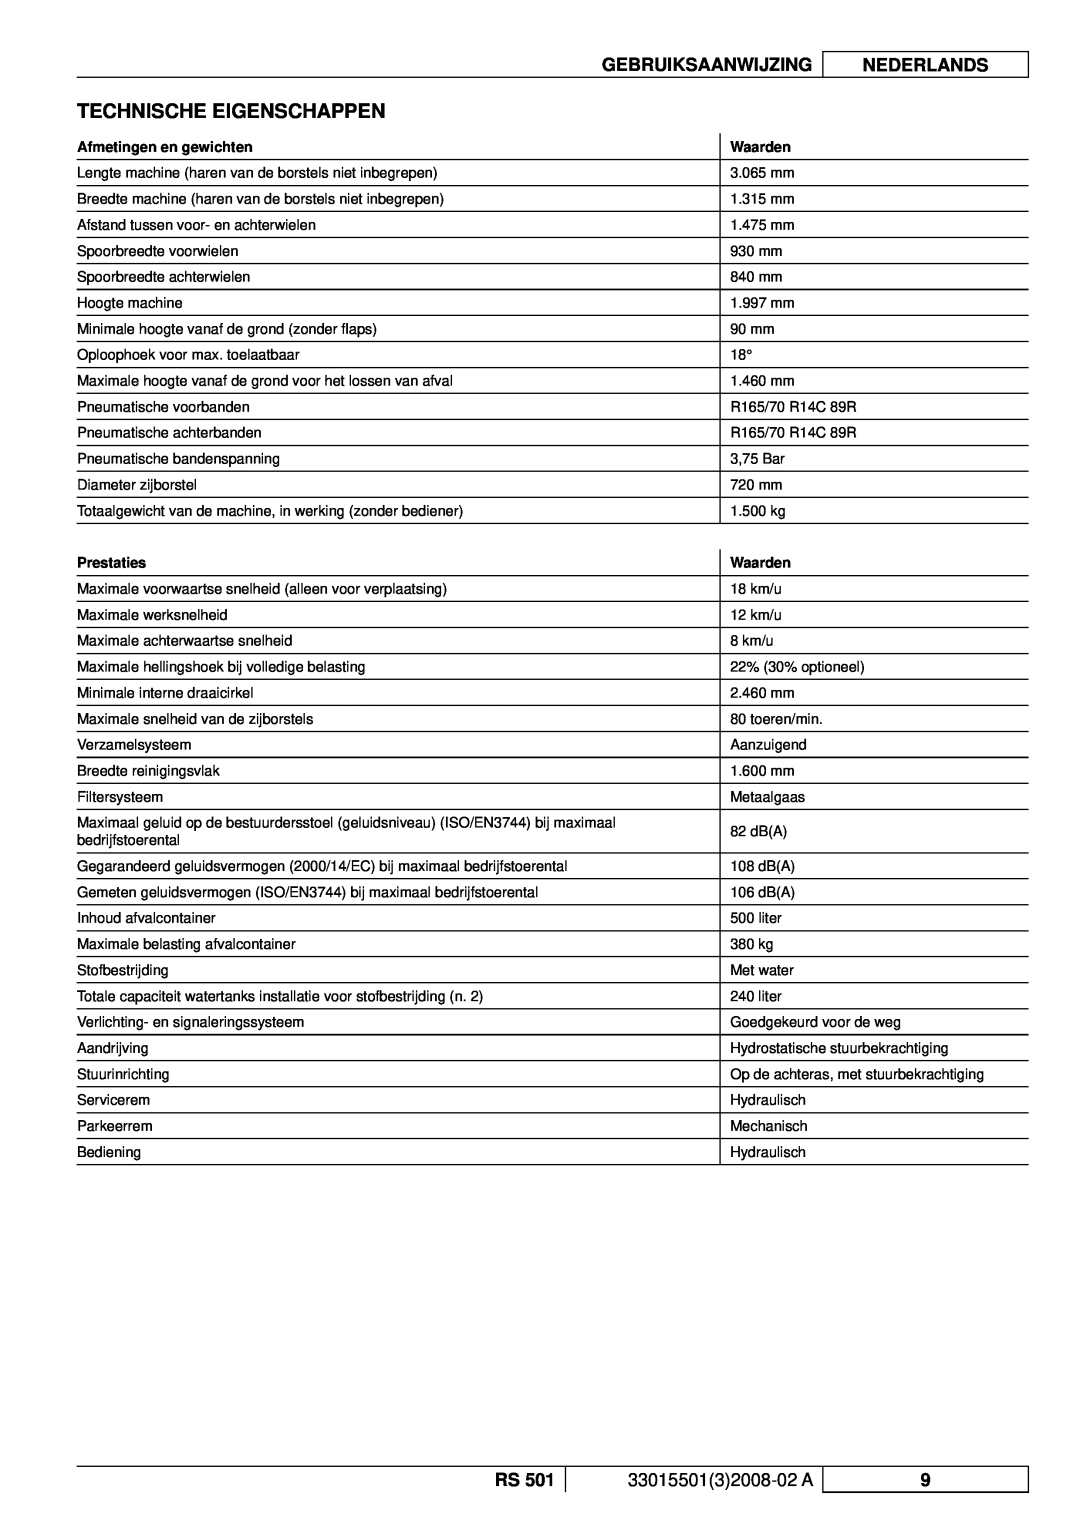 Nilfisk-ALTO RS 501 Technische Eigenschappen, Gebruiksaanwijzing, Nederlands, 3301550132008-02A, Afmetingen en gewichten 